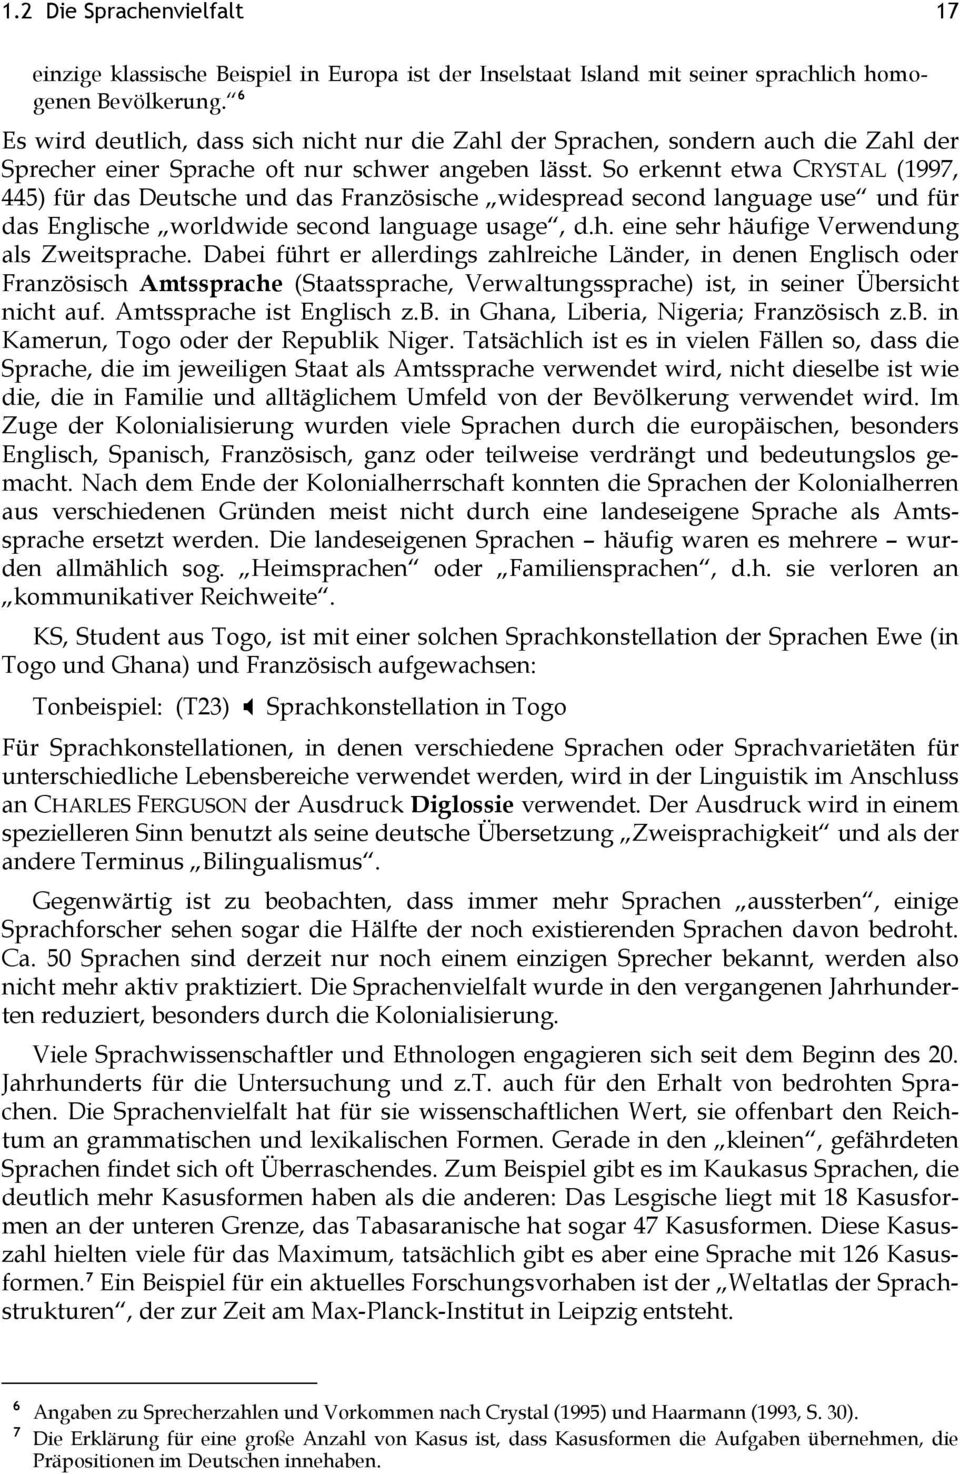 So erkennt etwa CRYSTAL (1997, 445) für das Deutsche und das Französische widespread second language use und für das Englische worldwide second language usage, d.h. eine sehr häufige Verwendung als Zweitsprache.